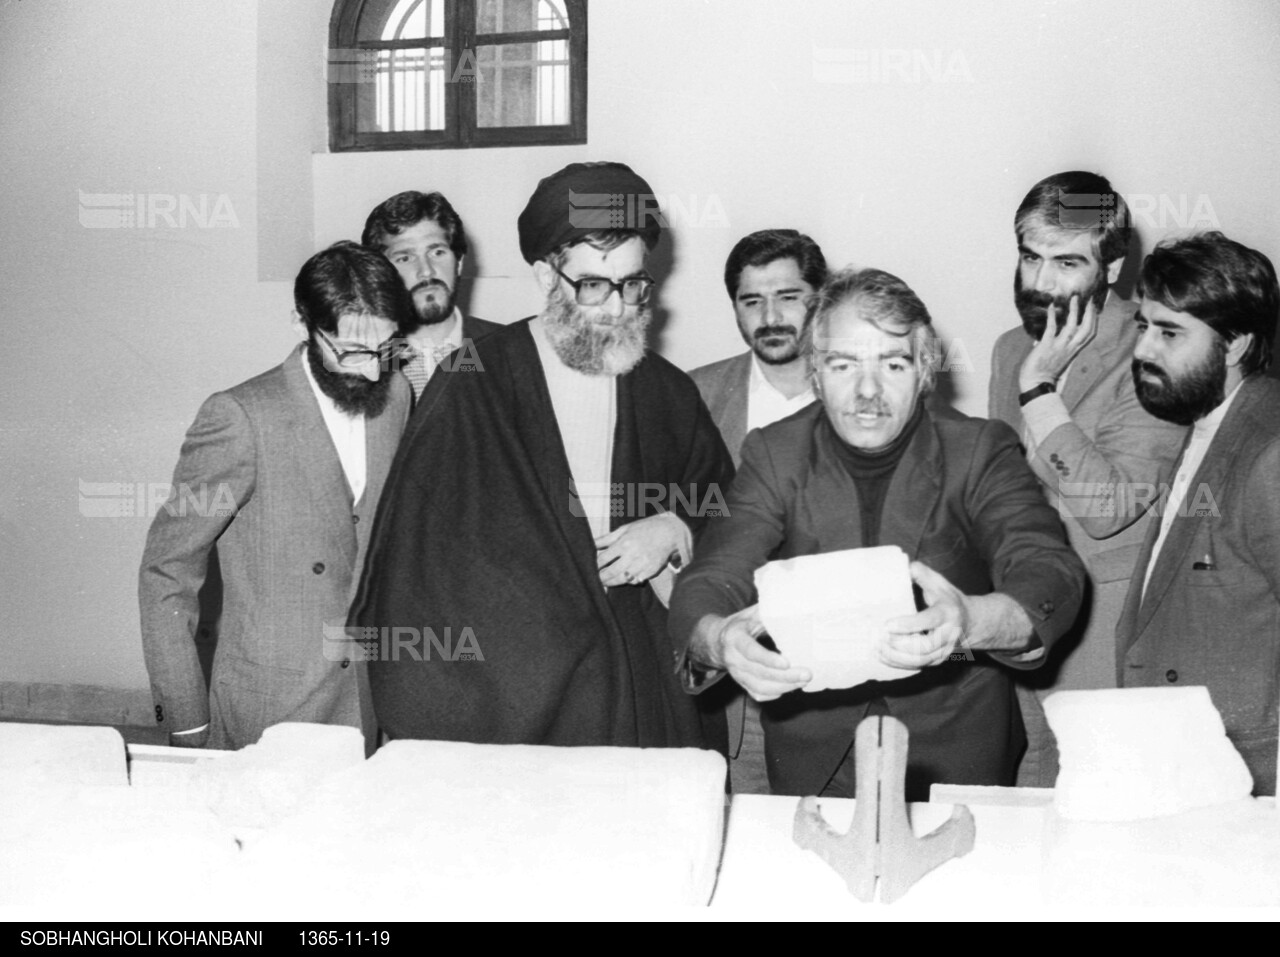 بازدید رییس جمهوری از موزه ایران باستان